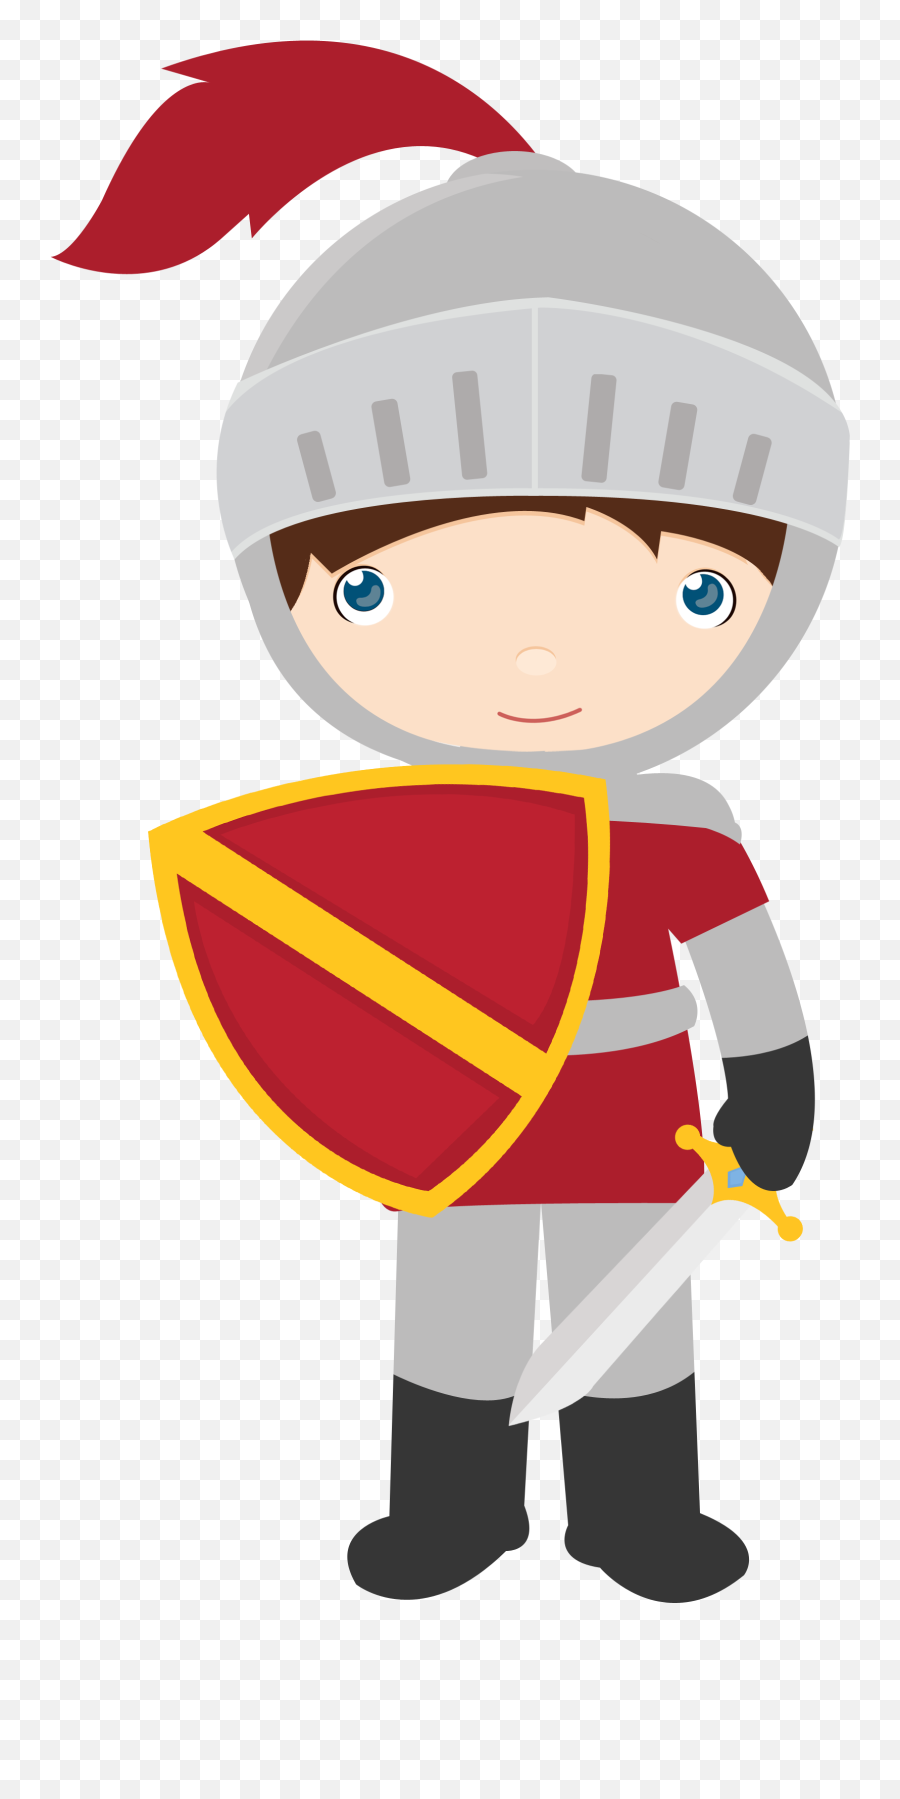 Princesas E Cavaleiros - Knight Clipart Transparent Background Emoji,Knights Emoji